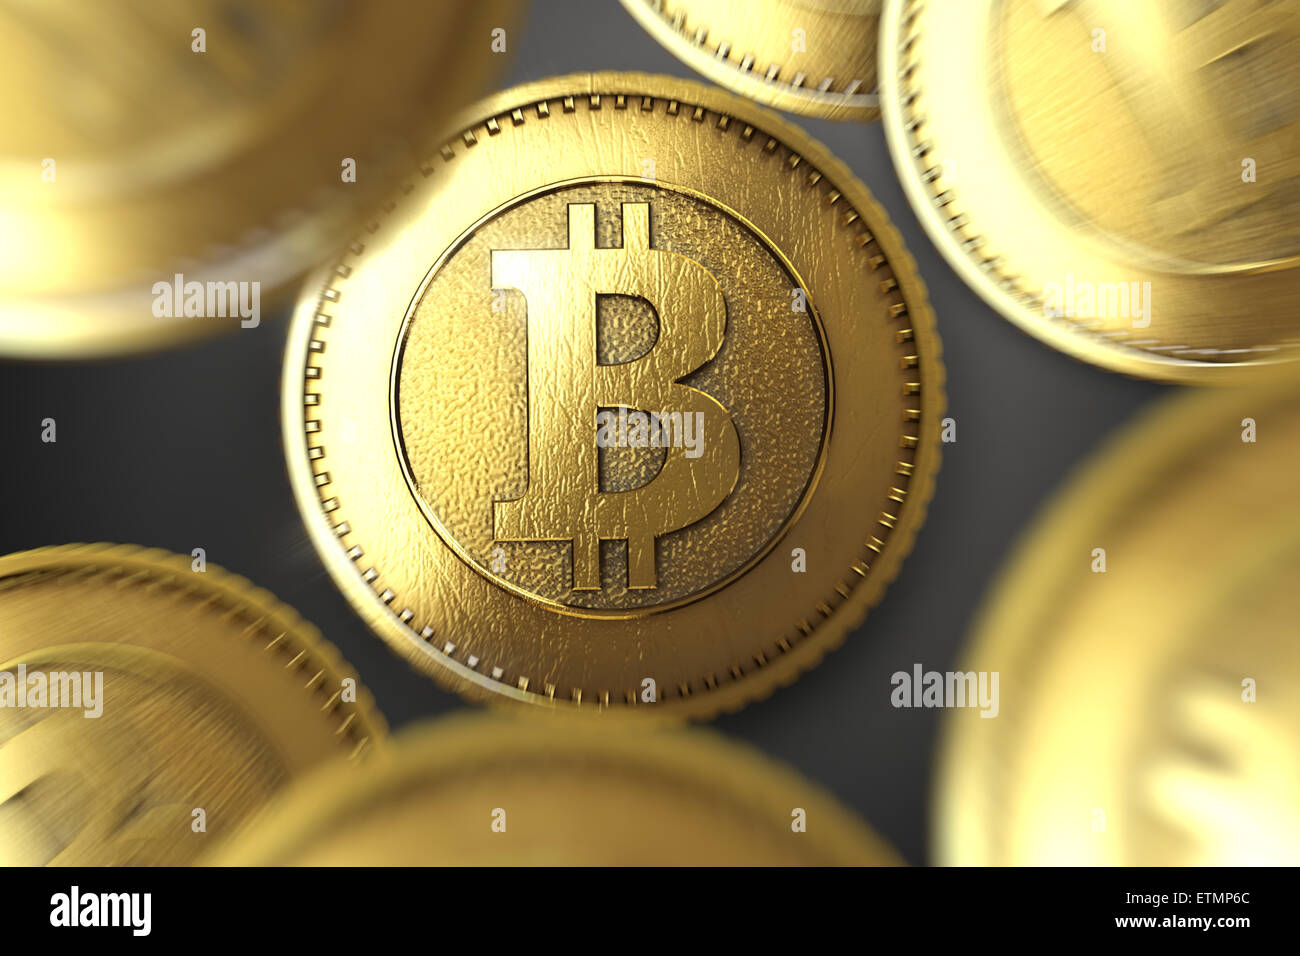 Representación estilizada de Bitcoin, una moneda digital. Foto de stock